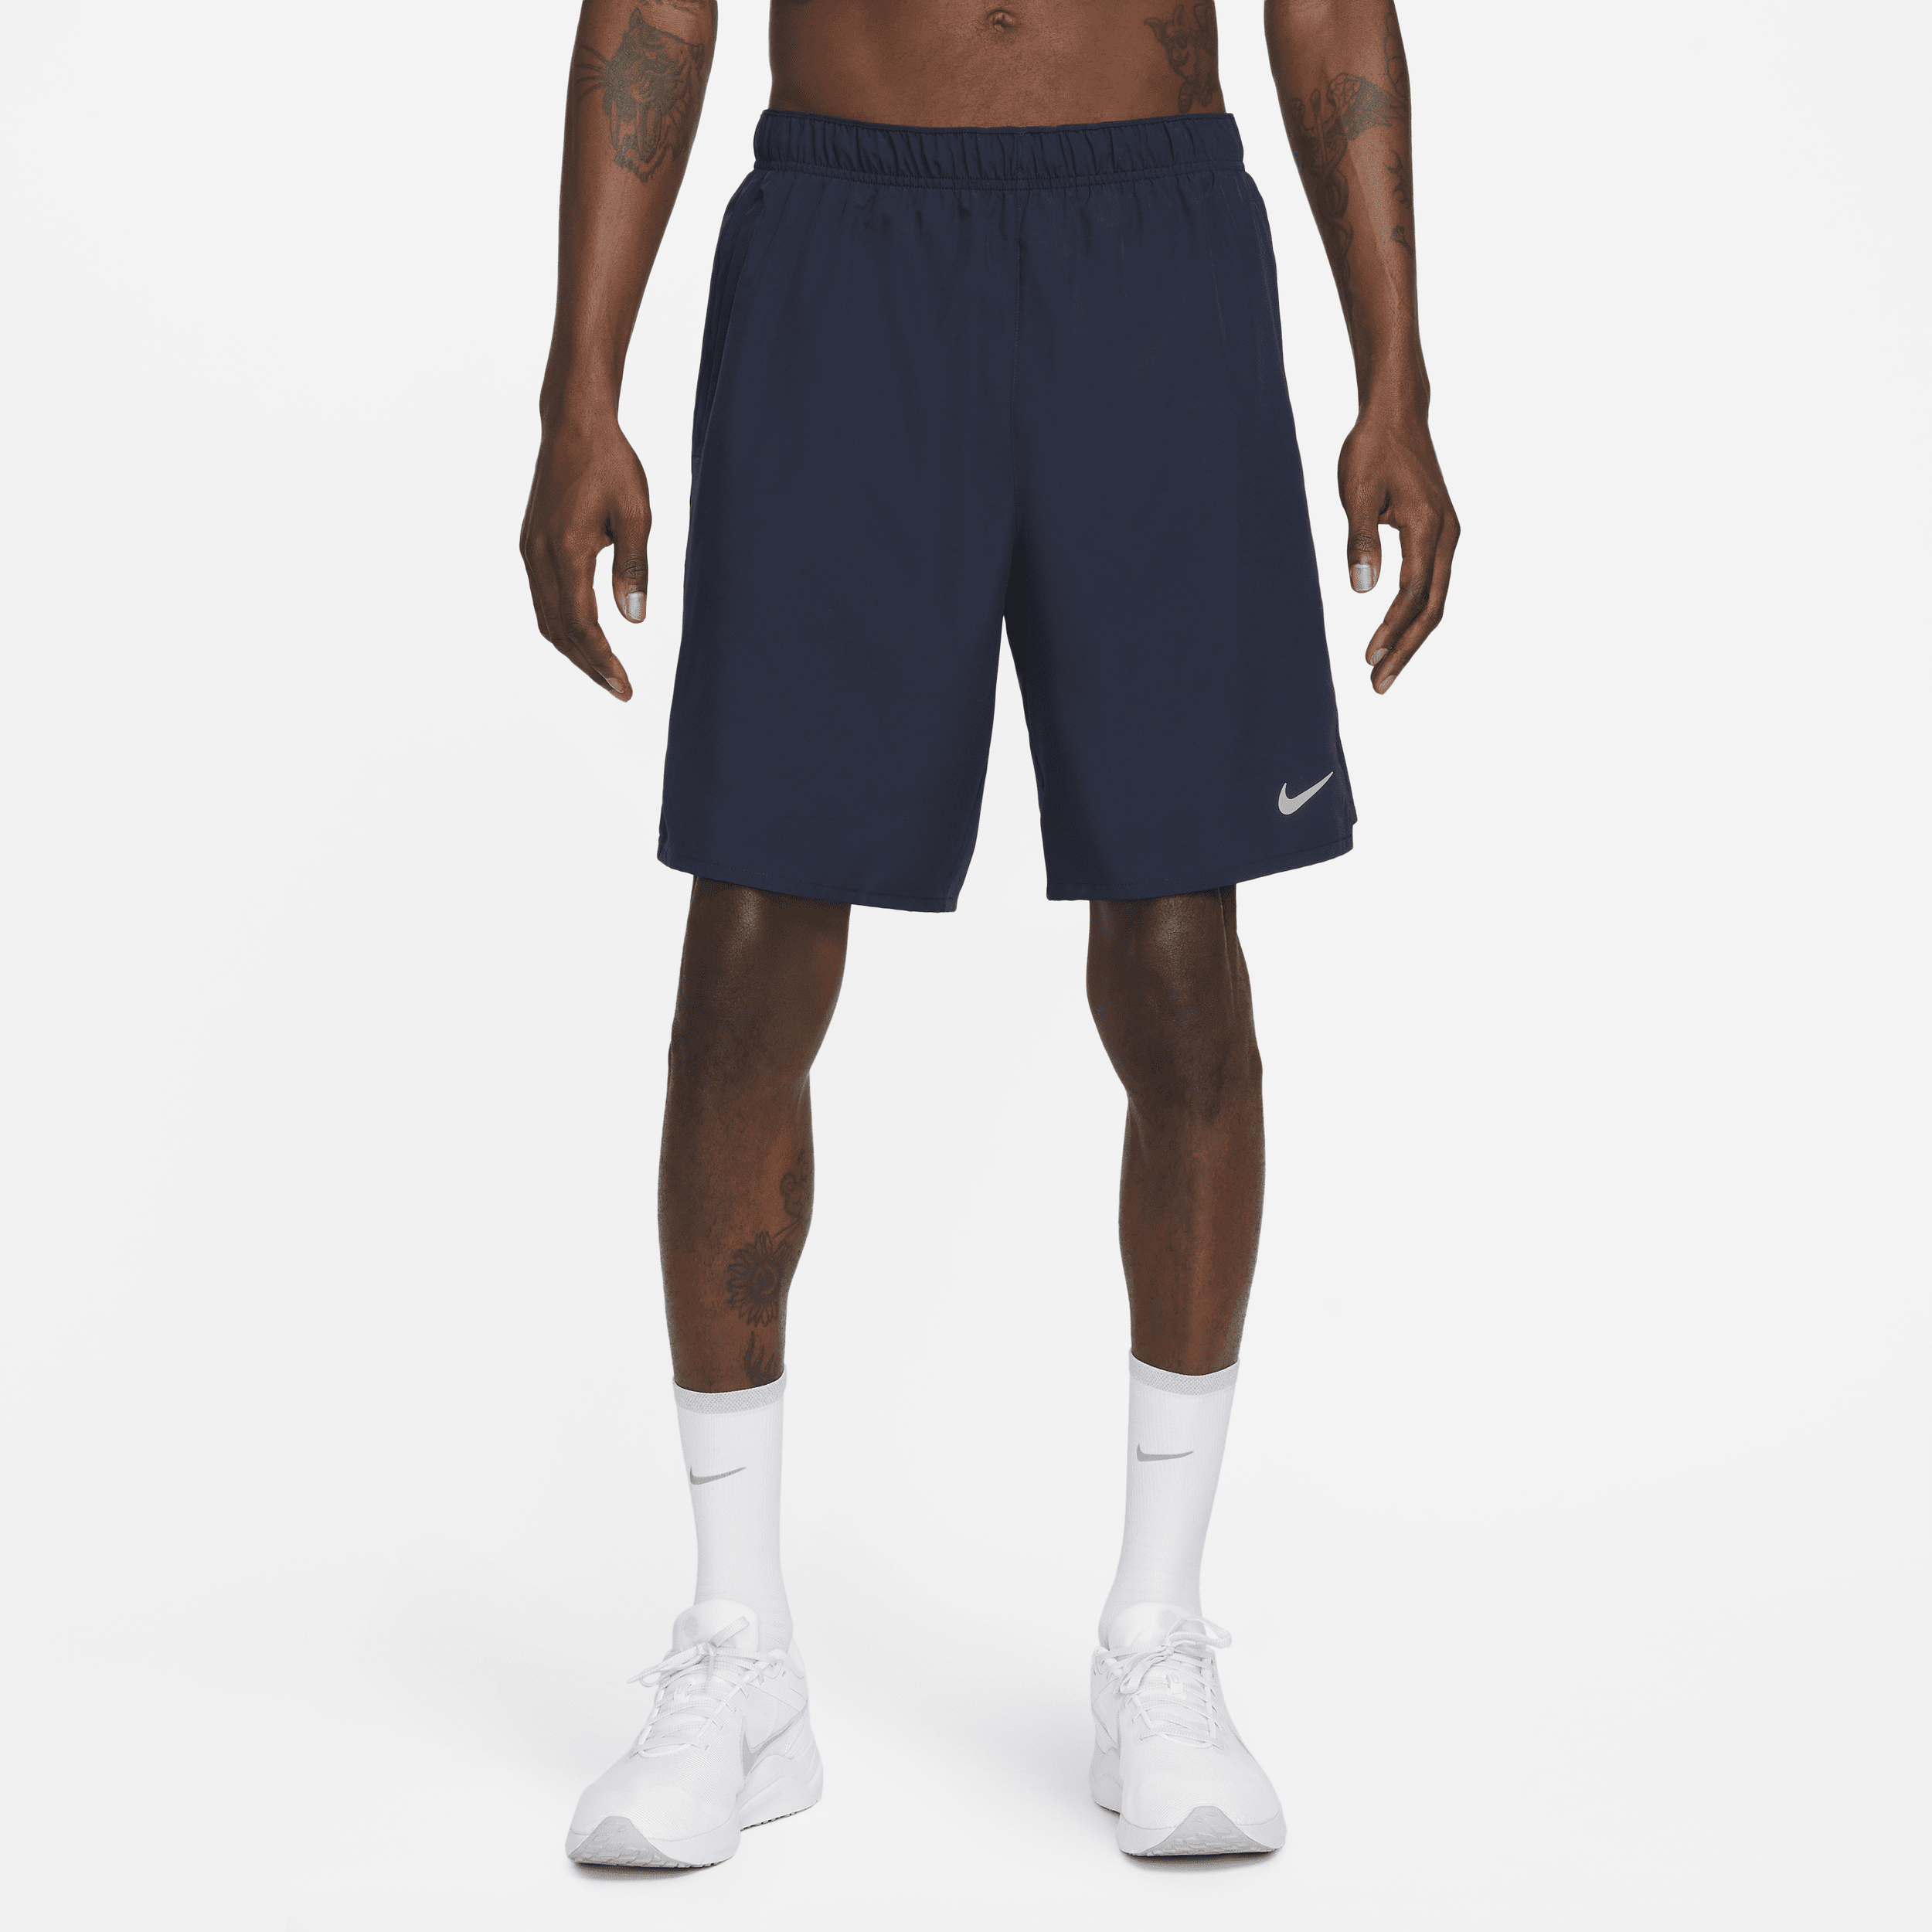 Alsidige Nike Challenger Dri-FIT-shorts (23 cm) uden for til mænd - blå